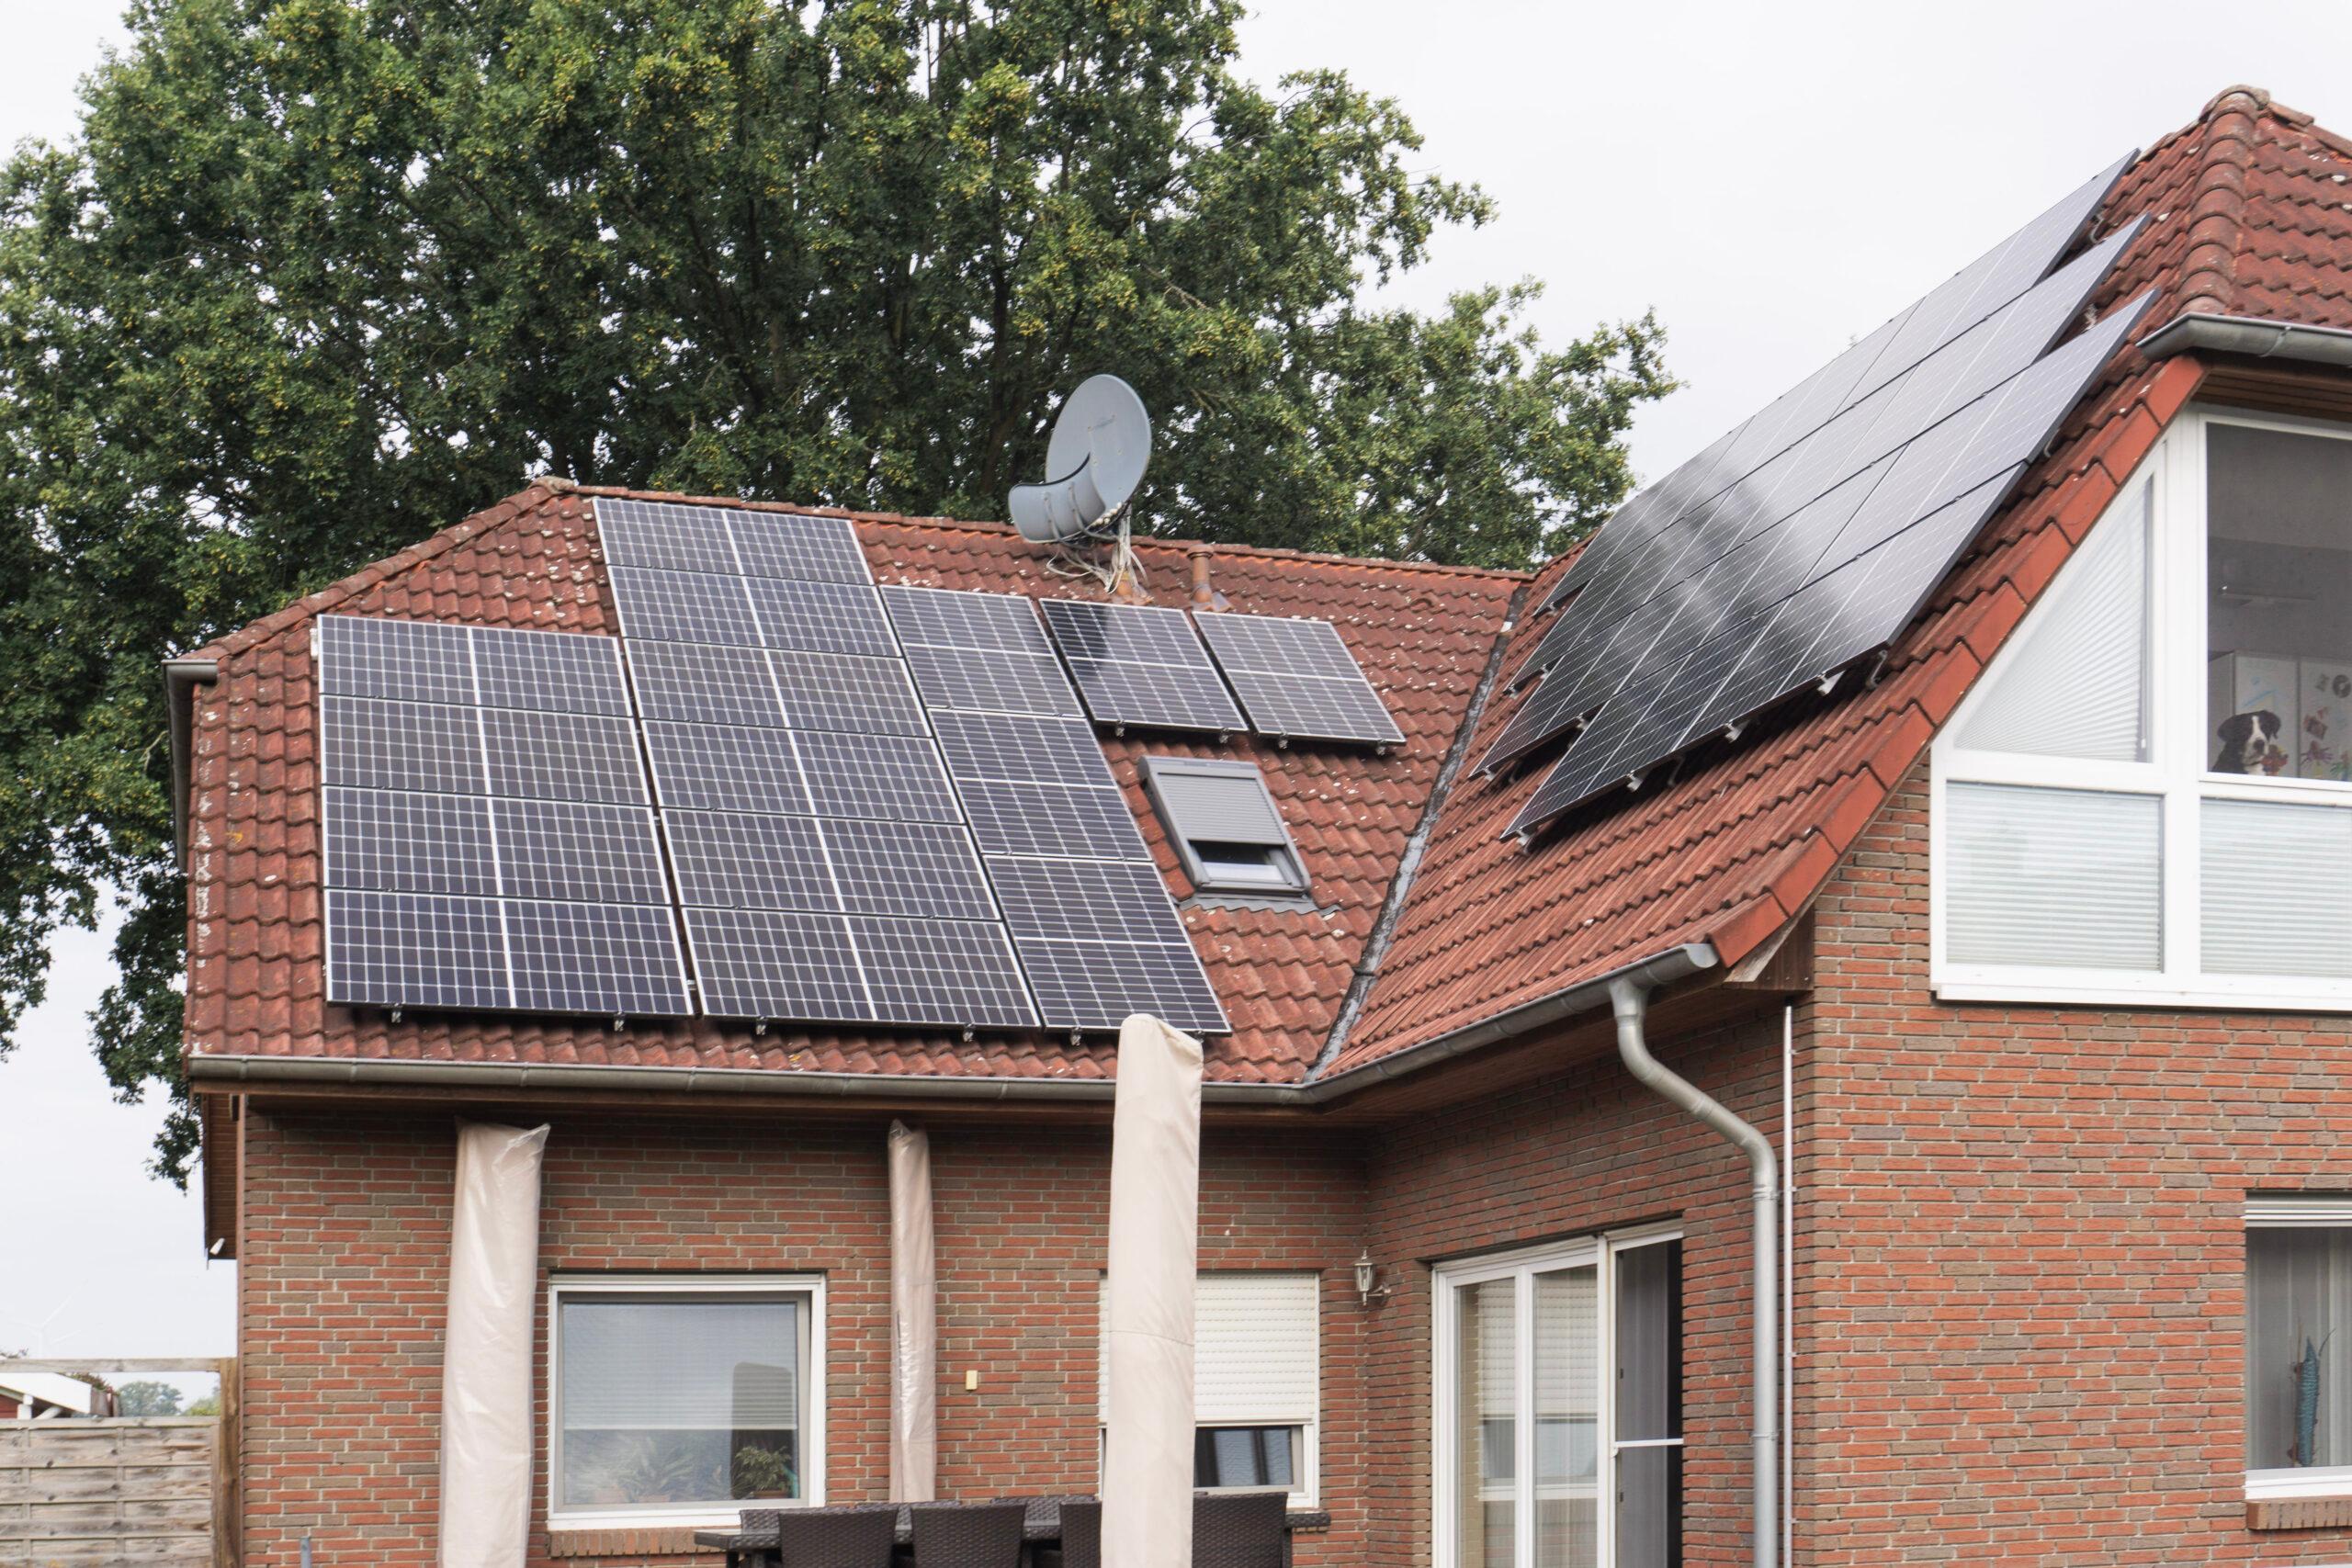 Einfamilienhaus mit Solaranlage ‒ zolar Hero Denis Pukrop